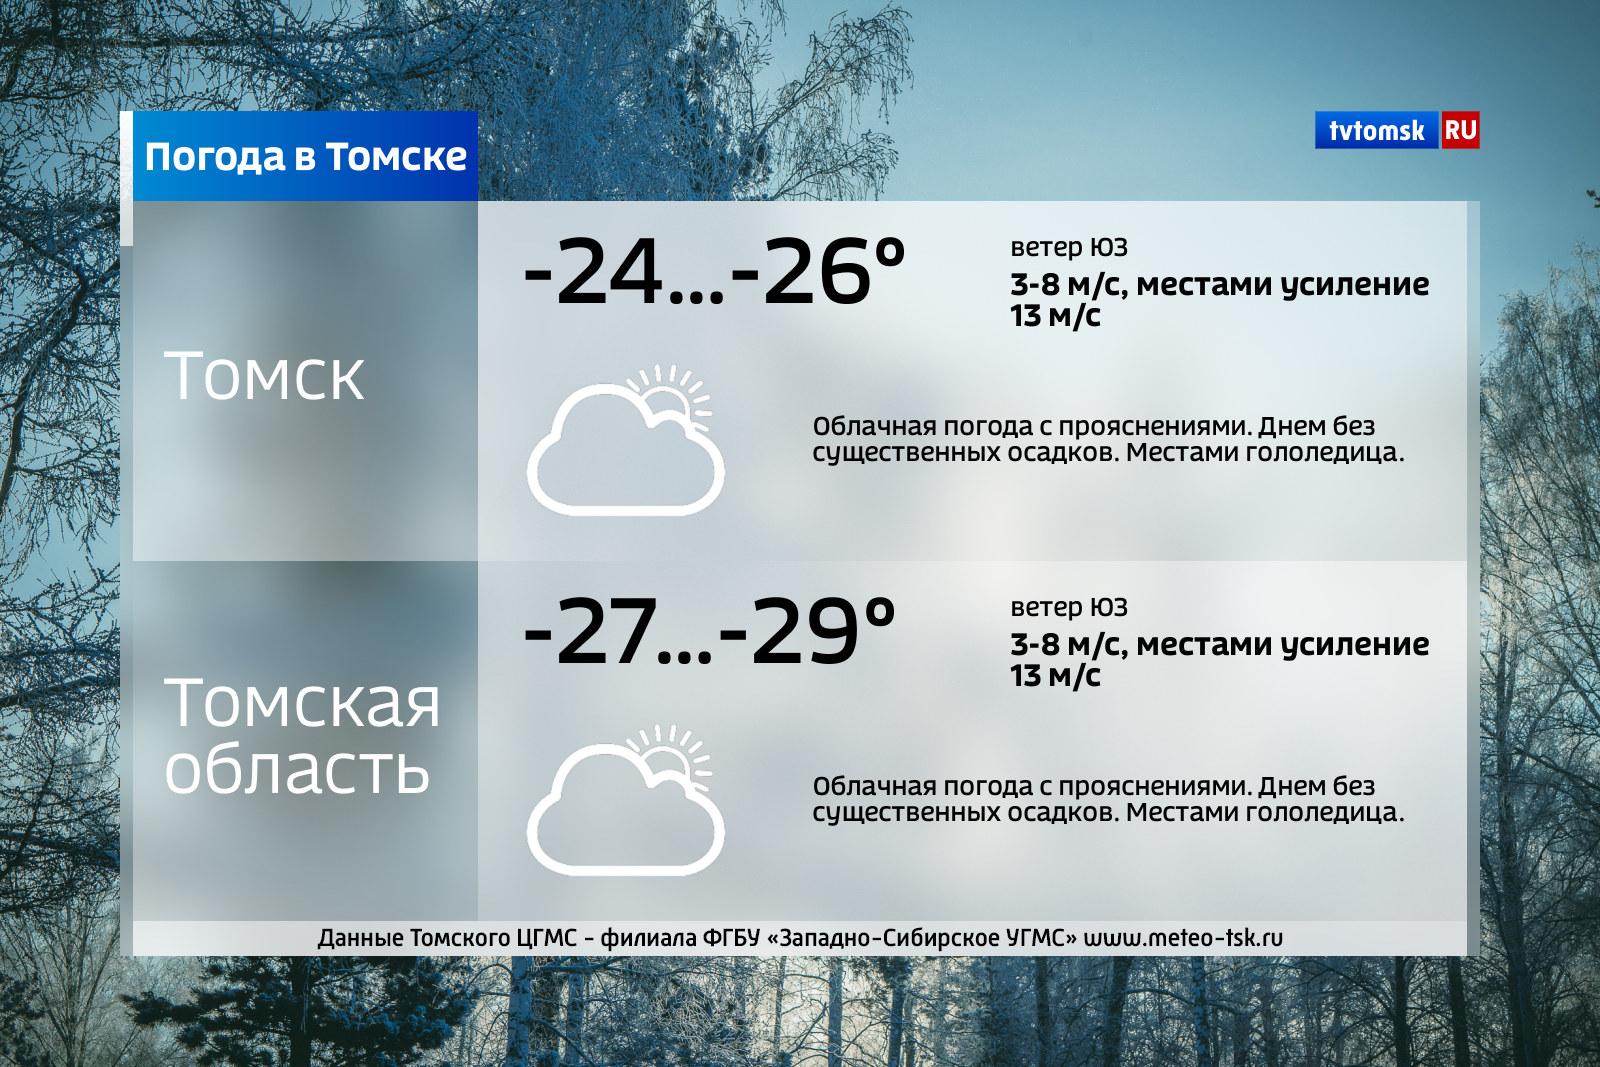 Погода в томском. Погода в Томске. Погода в Томске сегодня. Погода в Томске сейчас. Погода в Томске на 3.